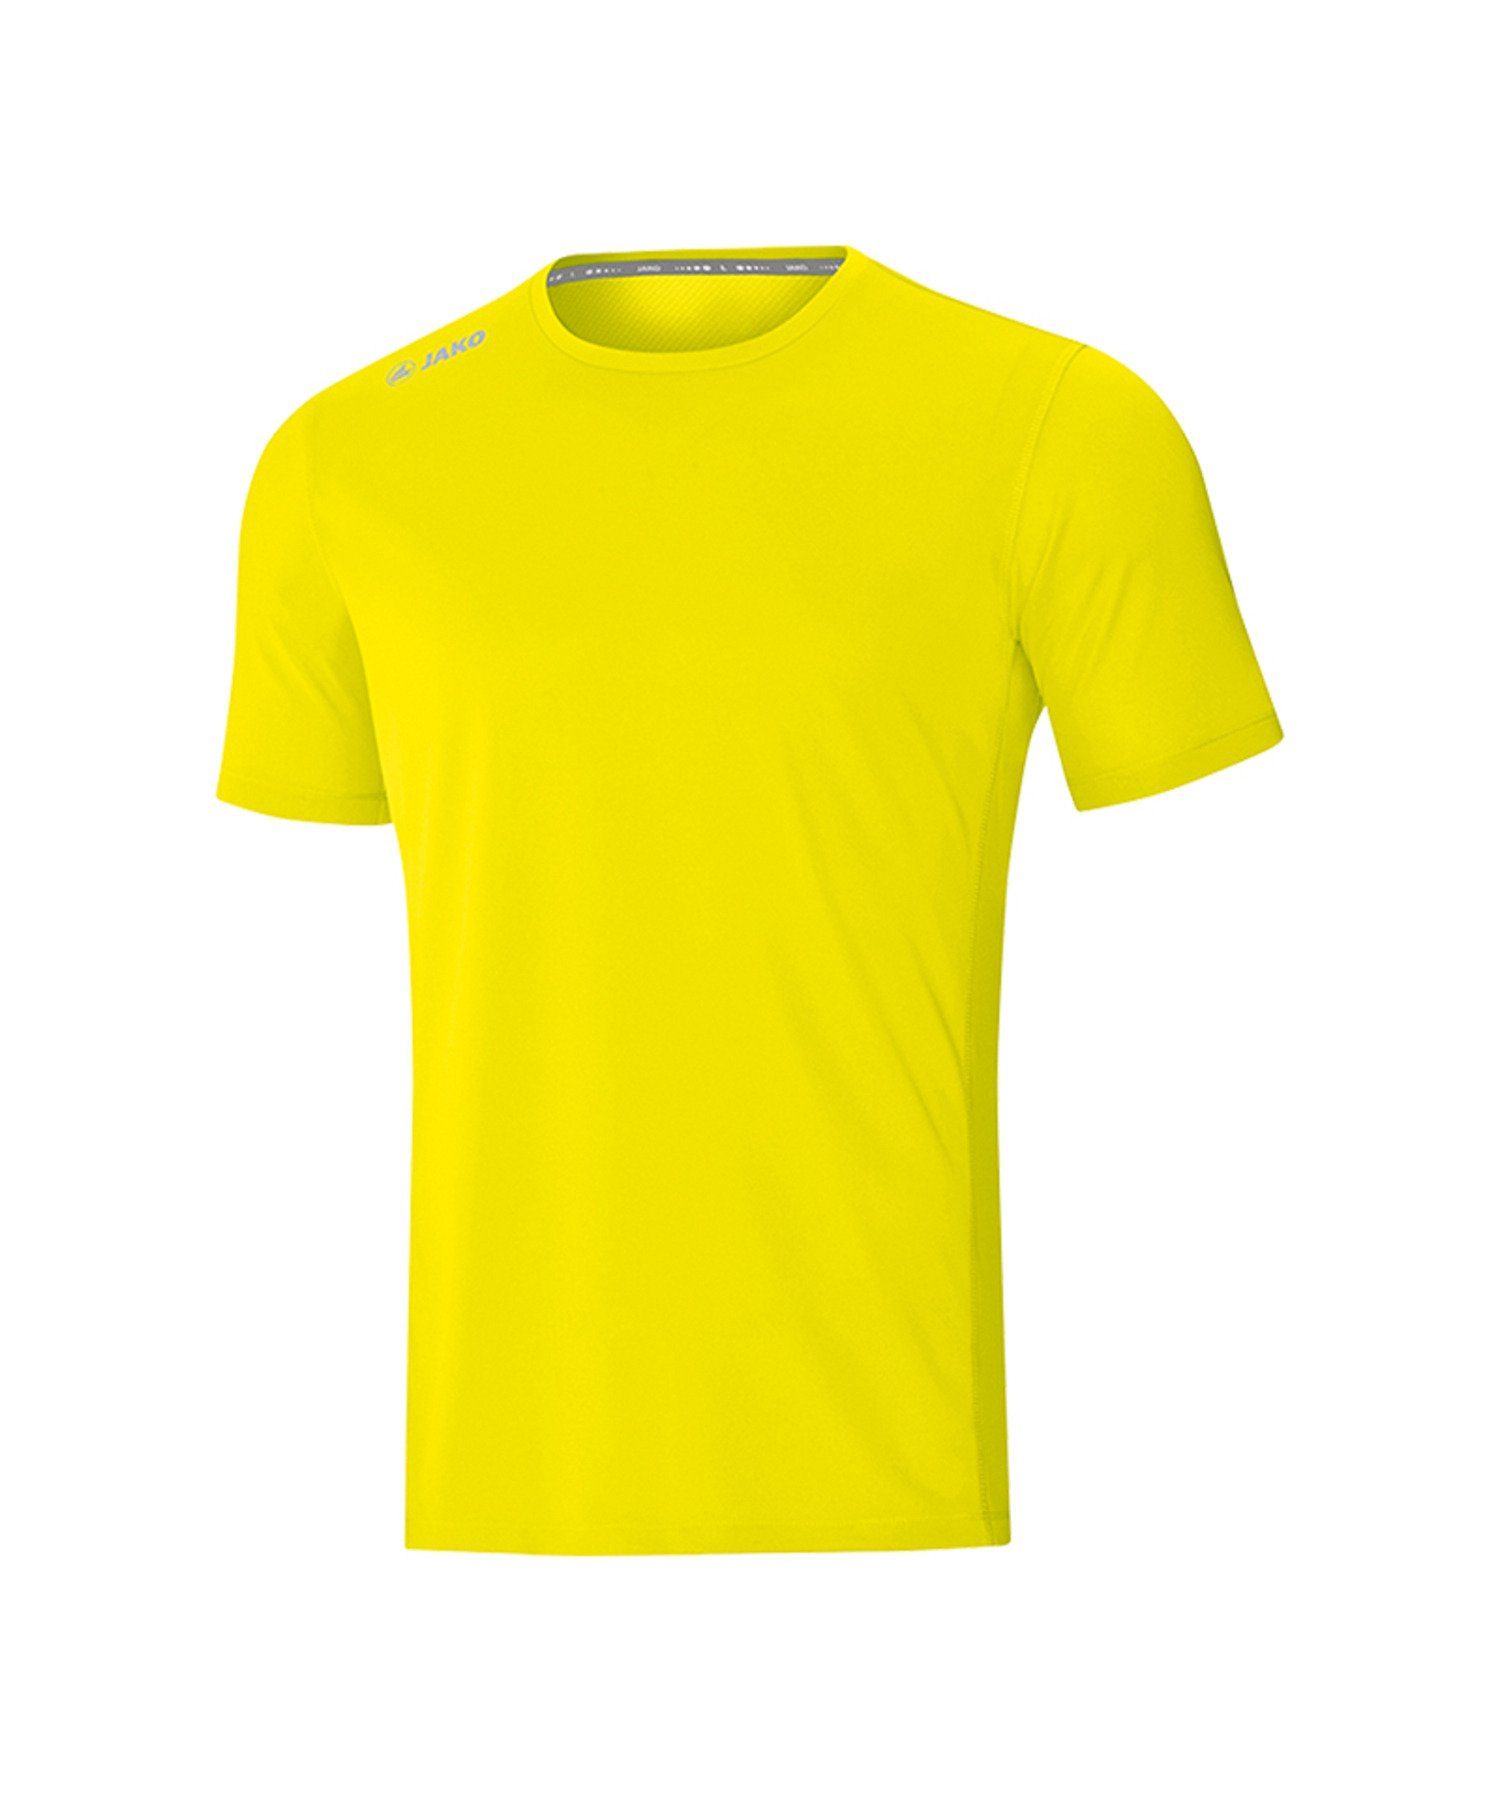 2.0 Gelb default T-Shirt Run Running T-Shirt Jako